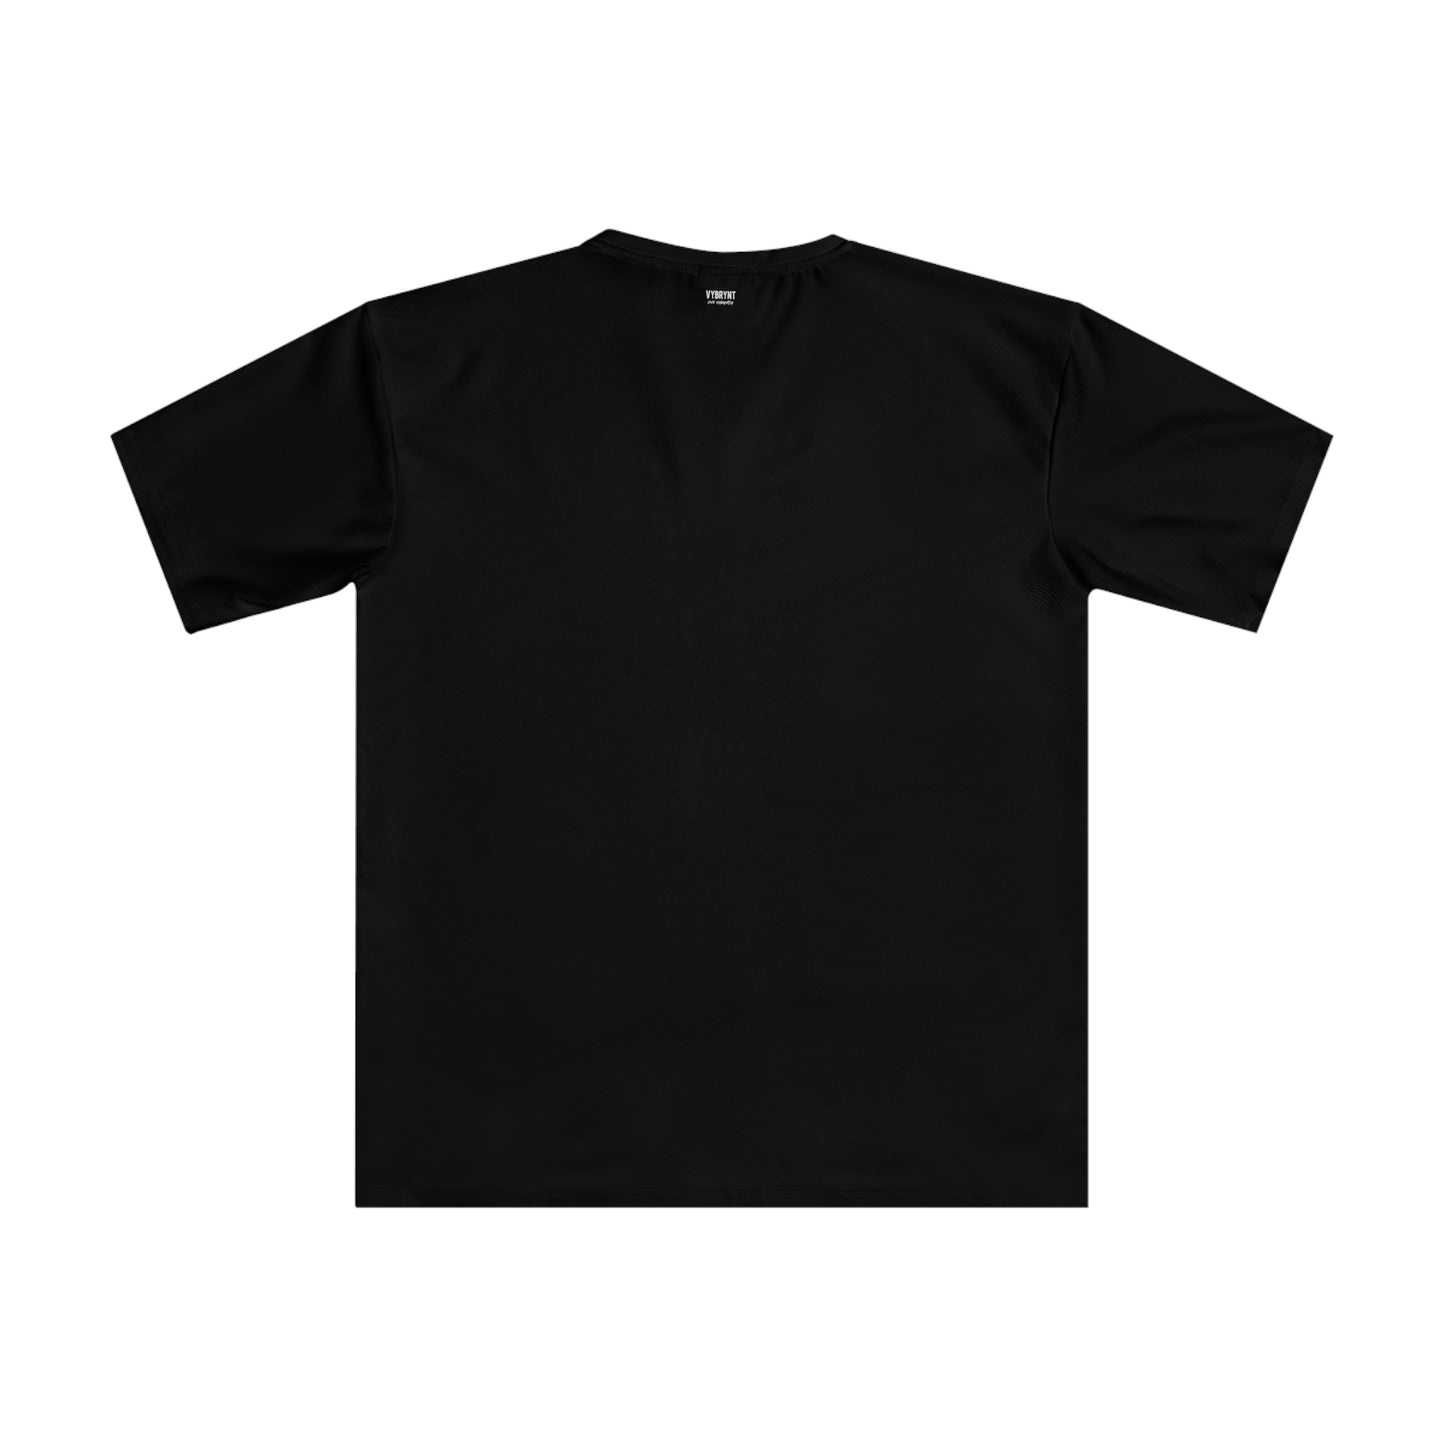 Splattered Sophistication Men's Black T-shirt